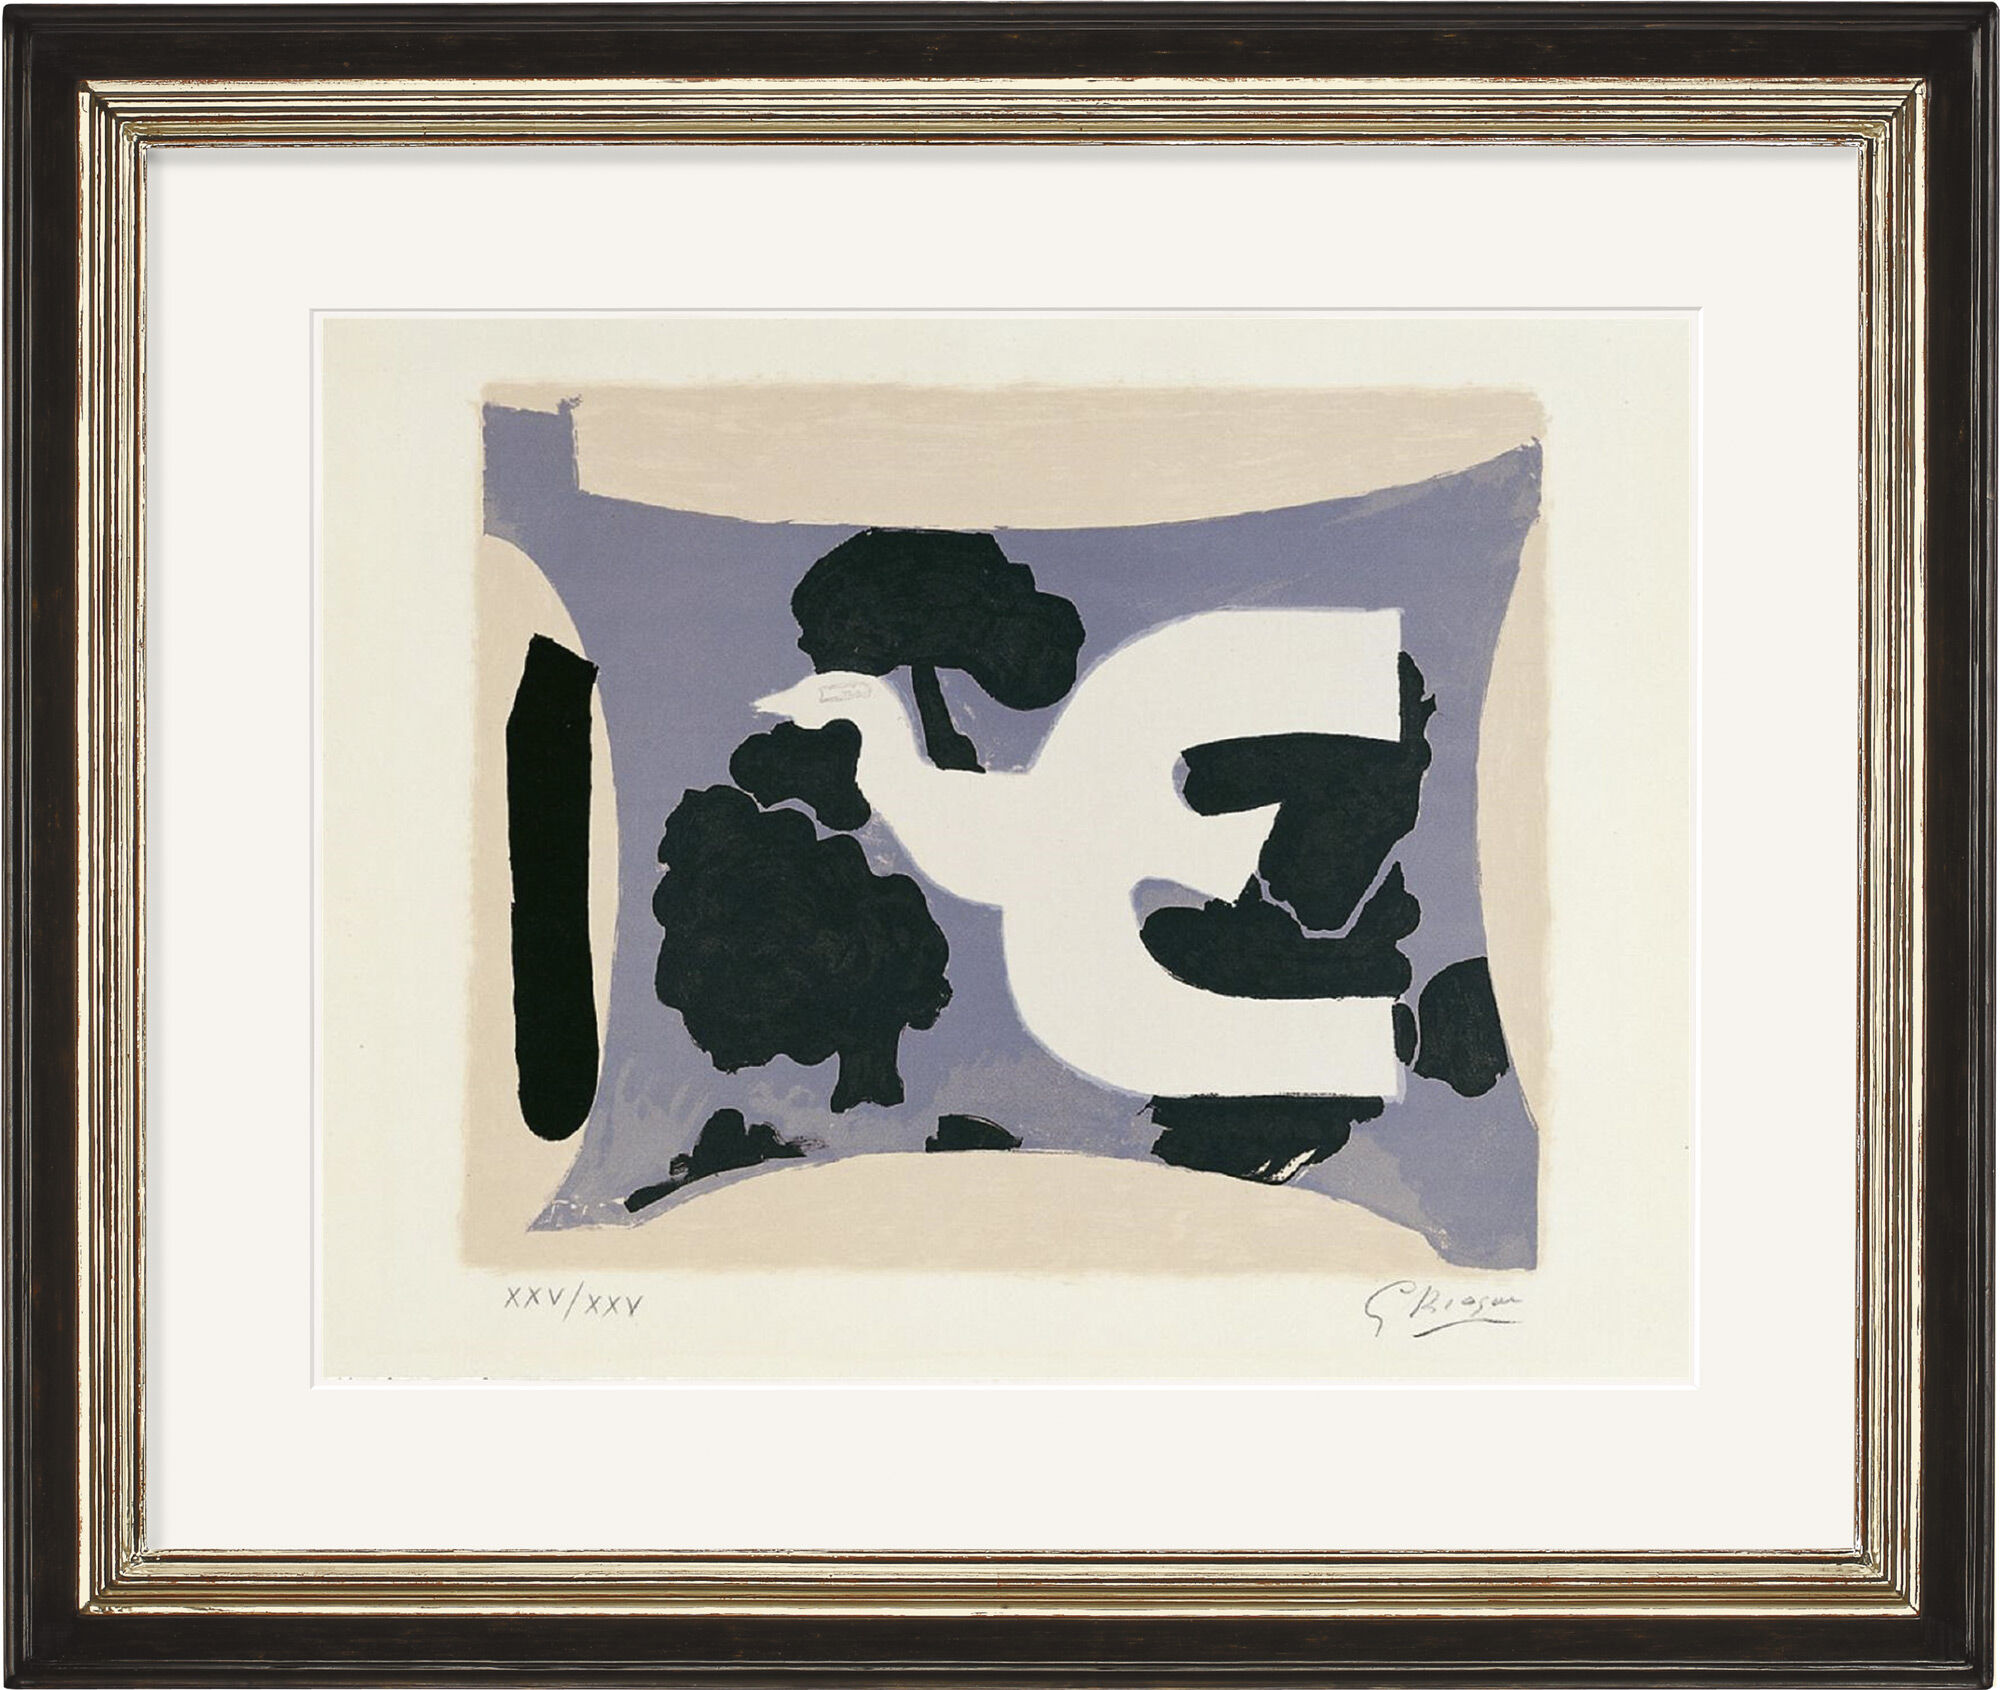 Tableau "L'atelier" (1961) von Georges Braque